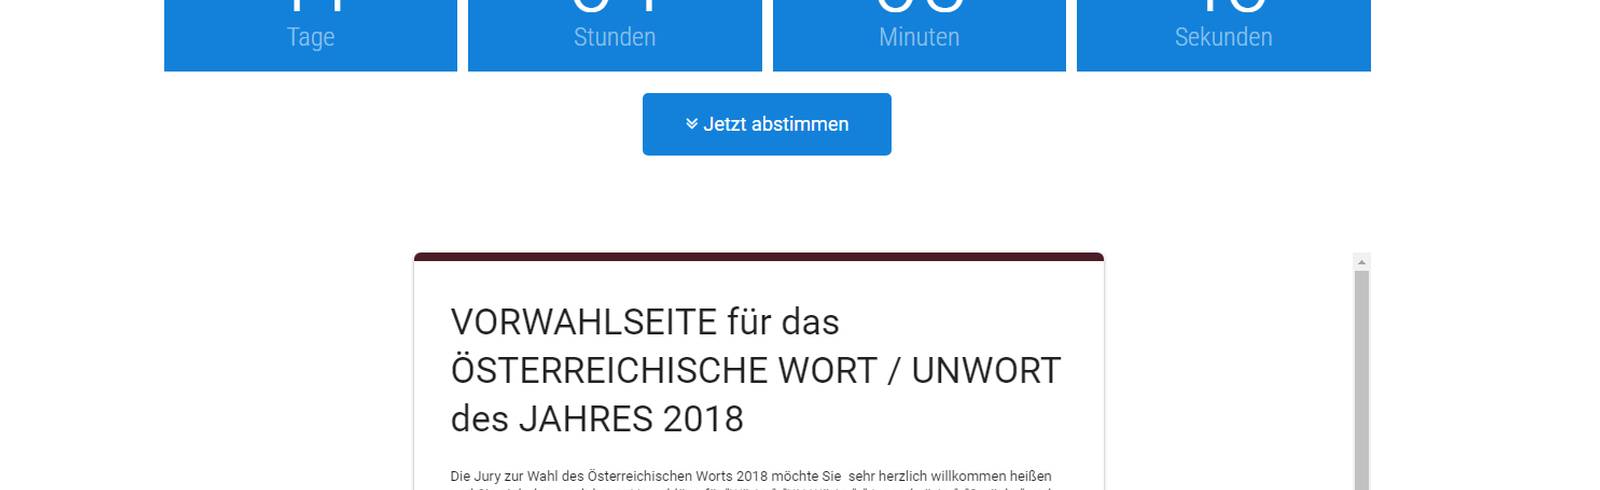 Das österreichische Wort des Jahres 2018 gesucht